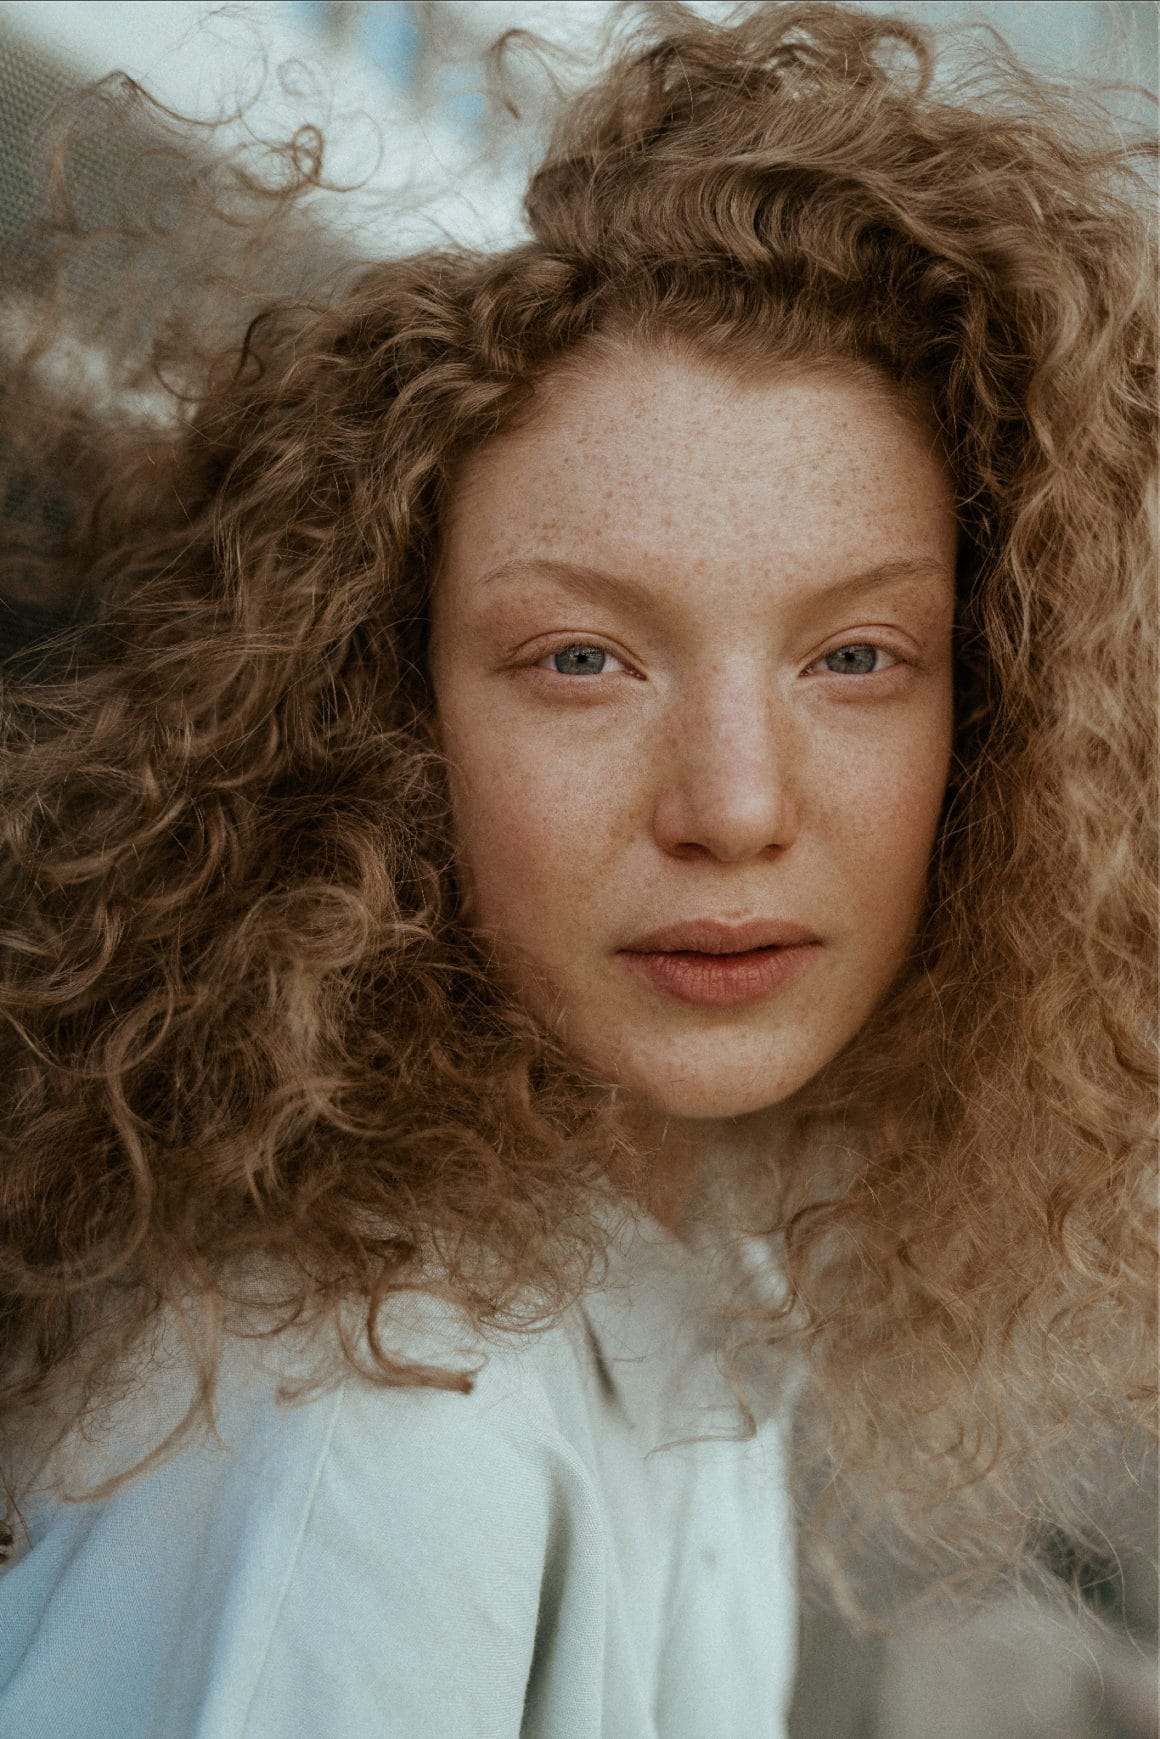 Portrait finaliste de l'édition 2019 du concours du magazine The Indepedent Photographer, réalisé par Mark Elzey